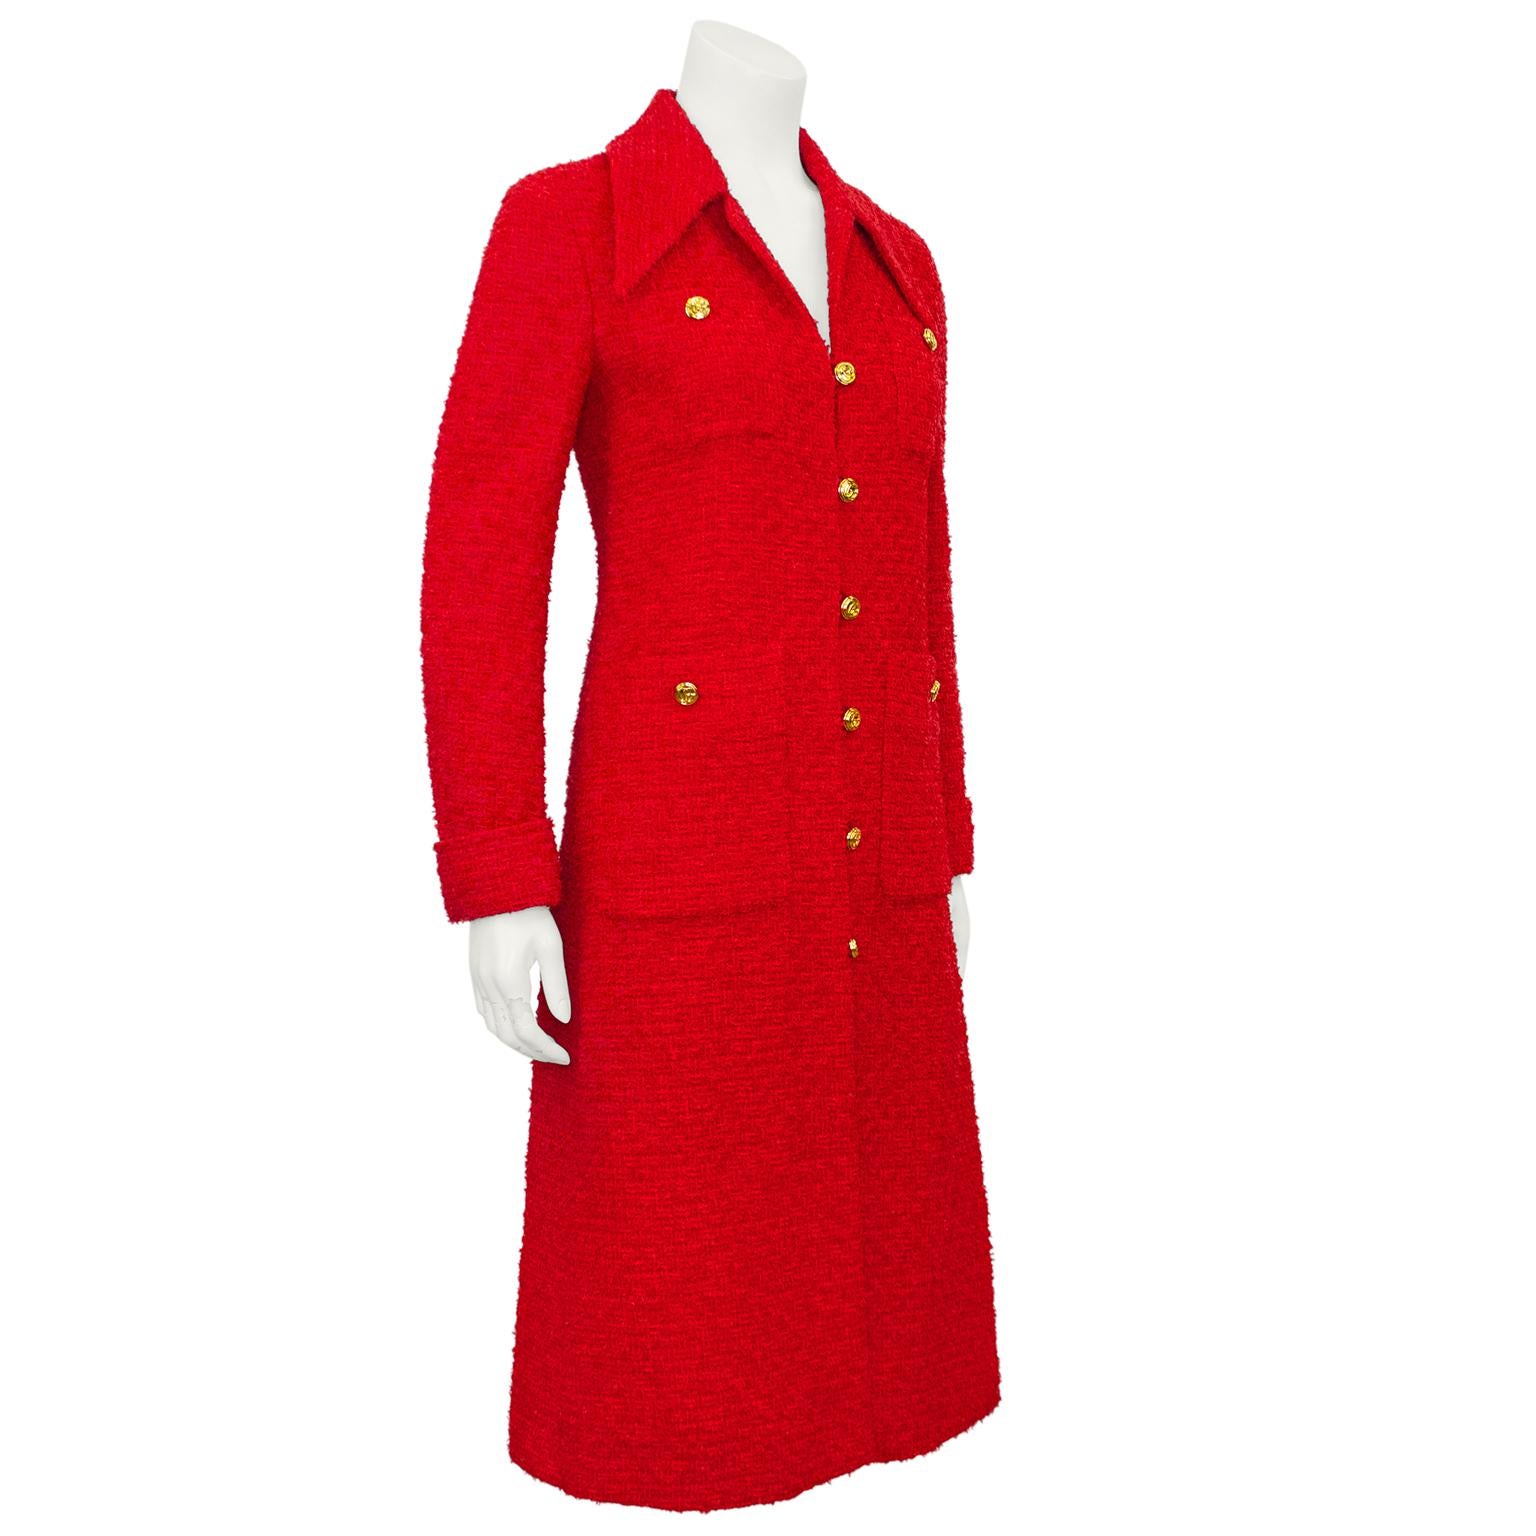 Eine fabelhafte lange rote Jacke aus der Ära von Alessandro Michele für Gucci, mit einer Anspielung auf das klassische Chanel. Roter Bouclé-Tweed mit großem spitzen Kragen, aufgesetzten Taschen an Brust und Hüfte und gefalteten Manschetten.